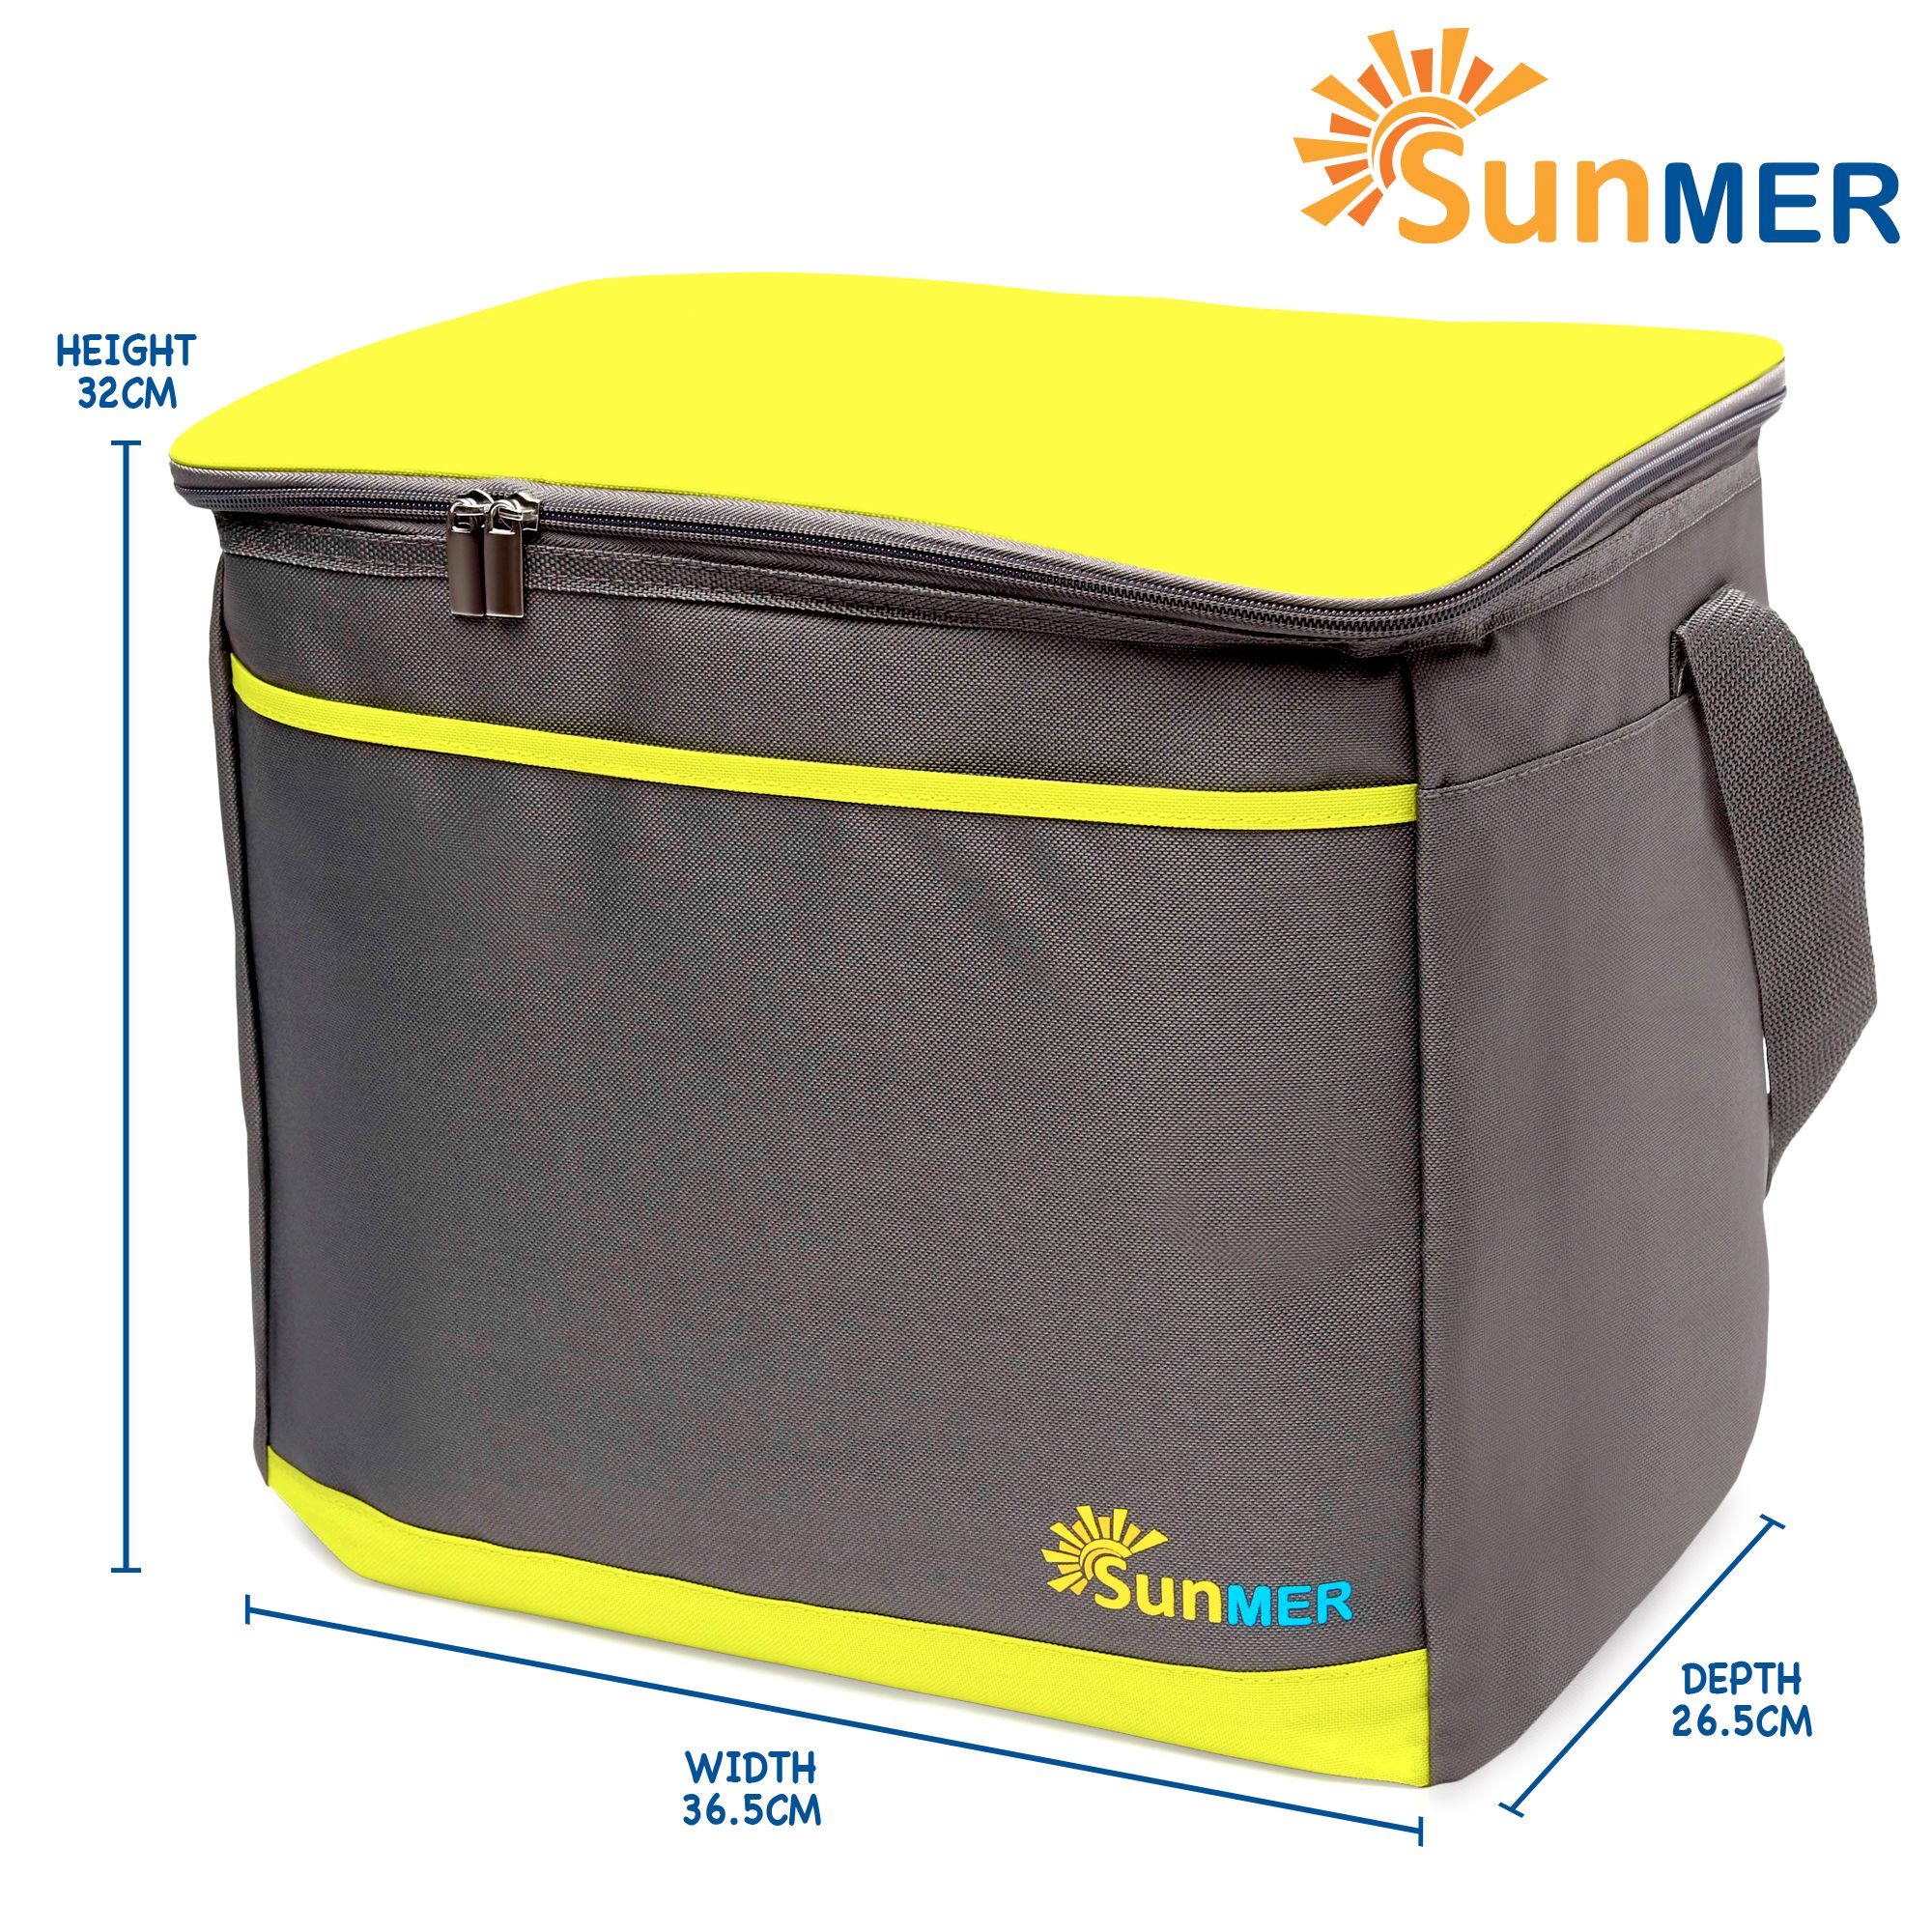 SUNMER 30L Cooler Bag With Shoulder Strap - Grey & Lime